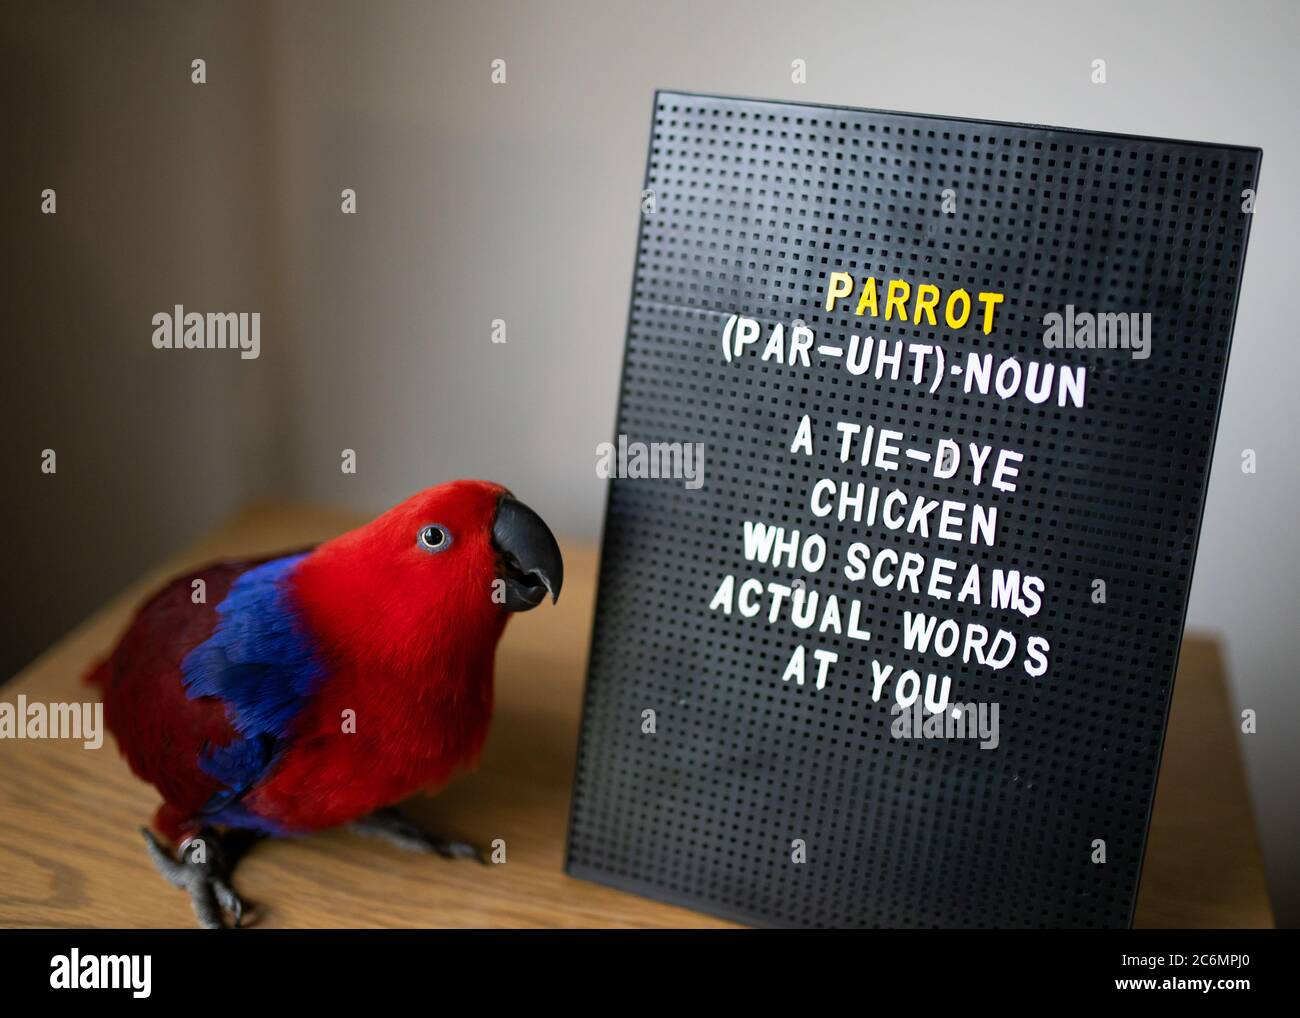 Ein weiblicher Eklectusparrot, der neben einem Wortbrett steht und eine lustige Beschreibung über Papageien enthält Stockfoto